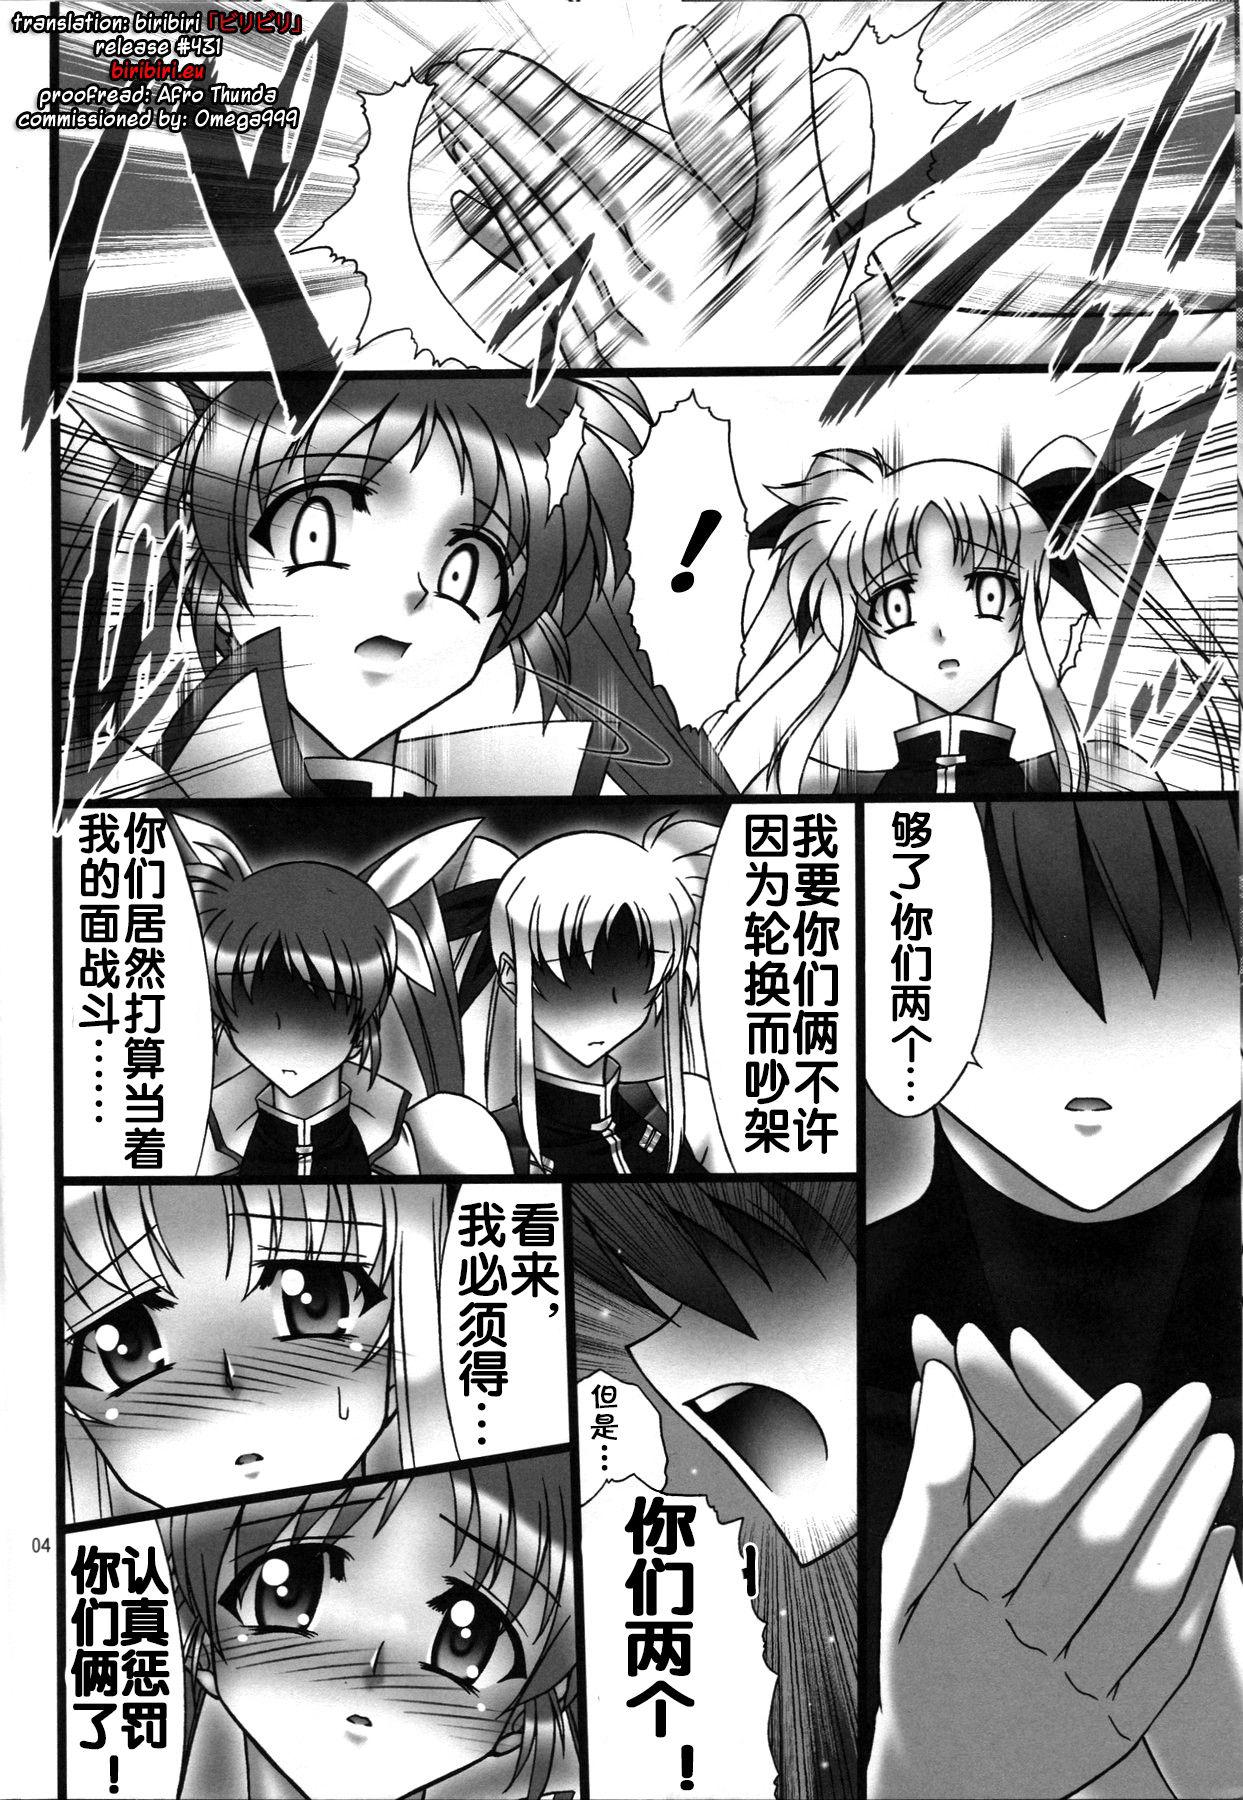 Sucking Angel's stroke 41 Suisei no Hanazono nite - Mahou shoujo lyrical nanoha Gym - Page 5